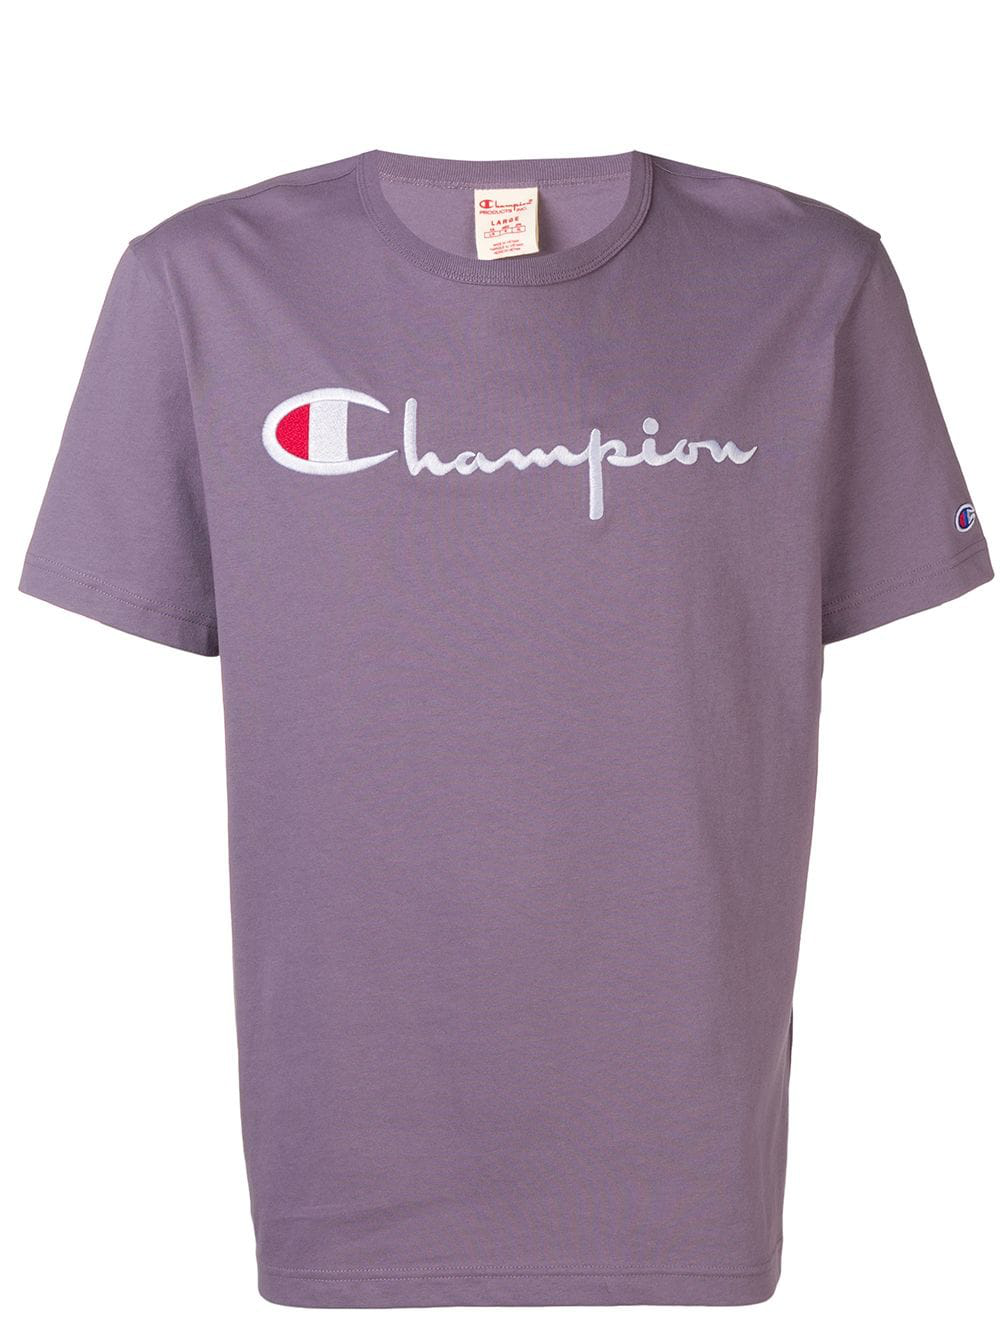 champion t 恤